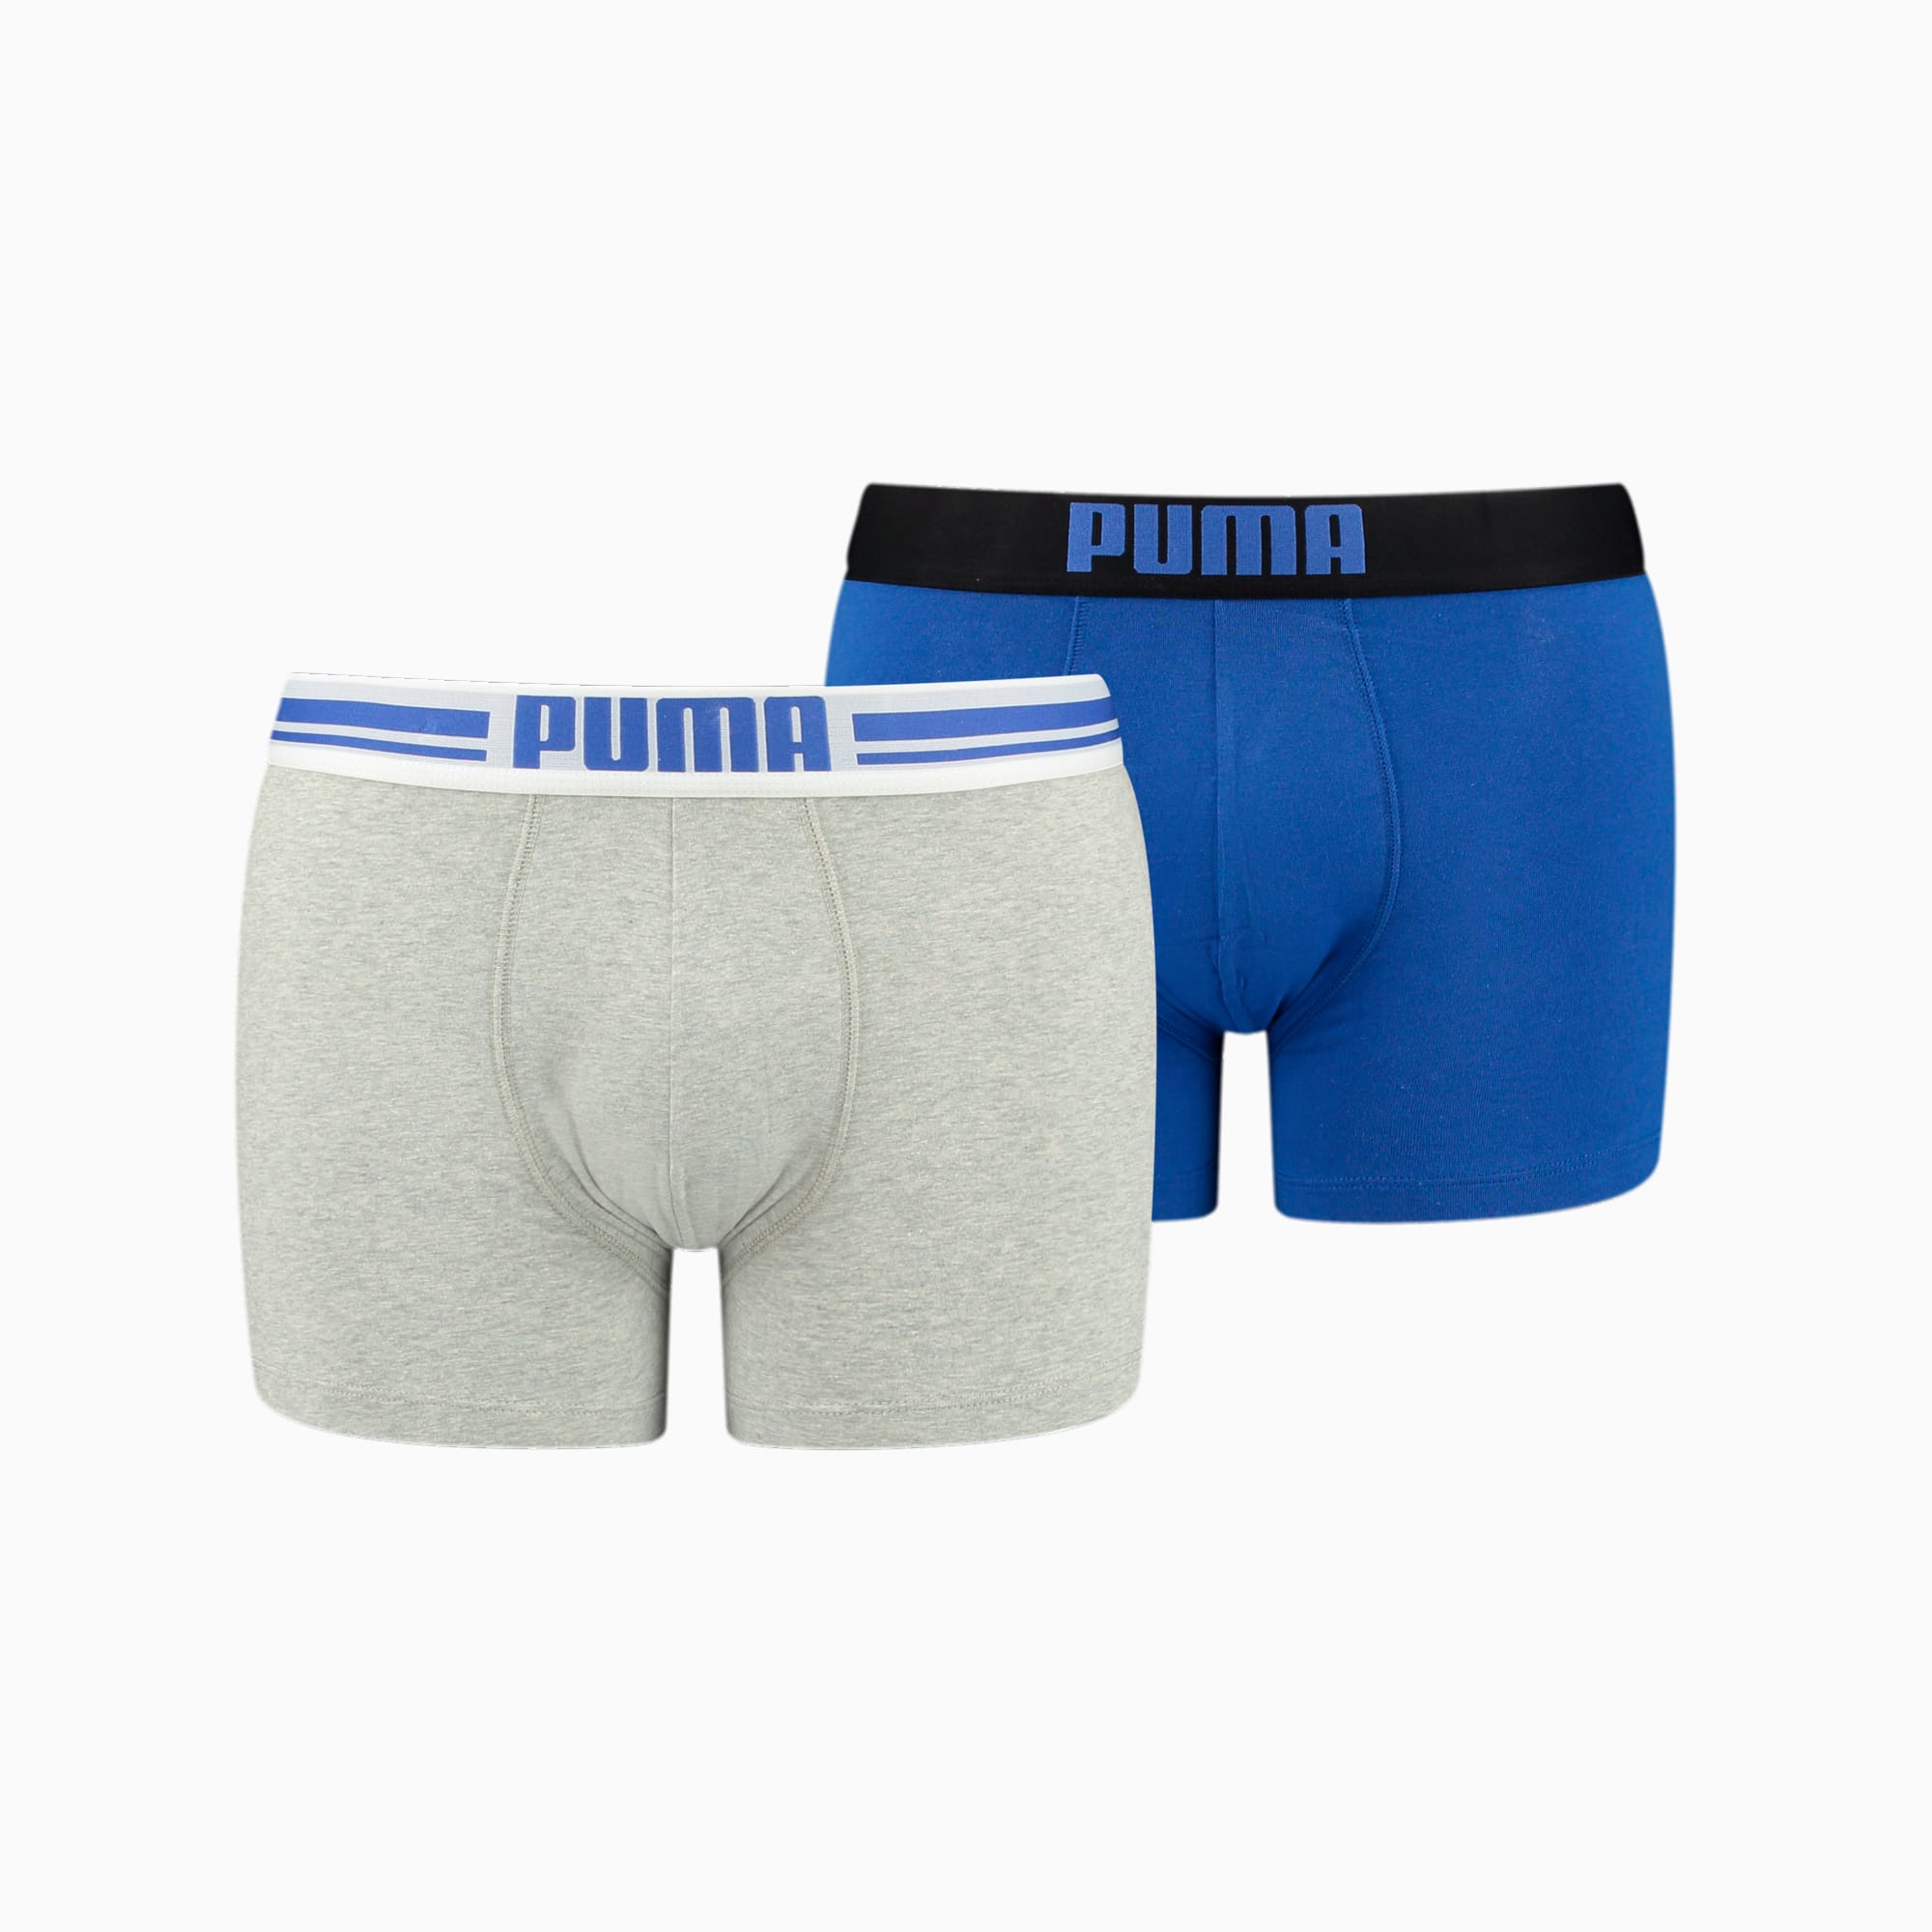 Lot De 2 Boxers Homme Avec Logo PUMA, Gris/Bleu/Melange